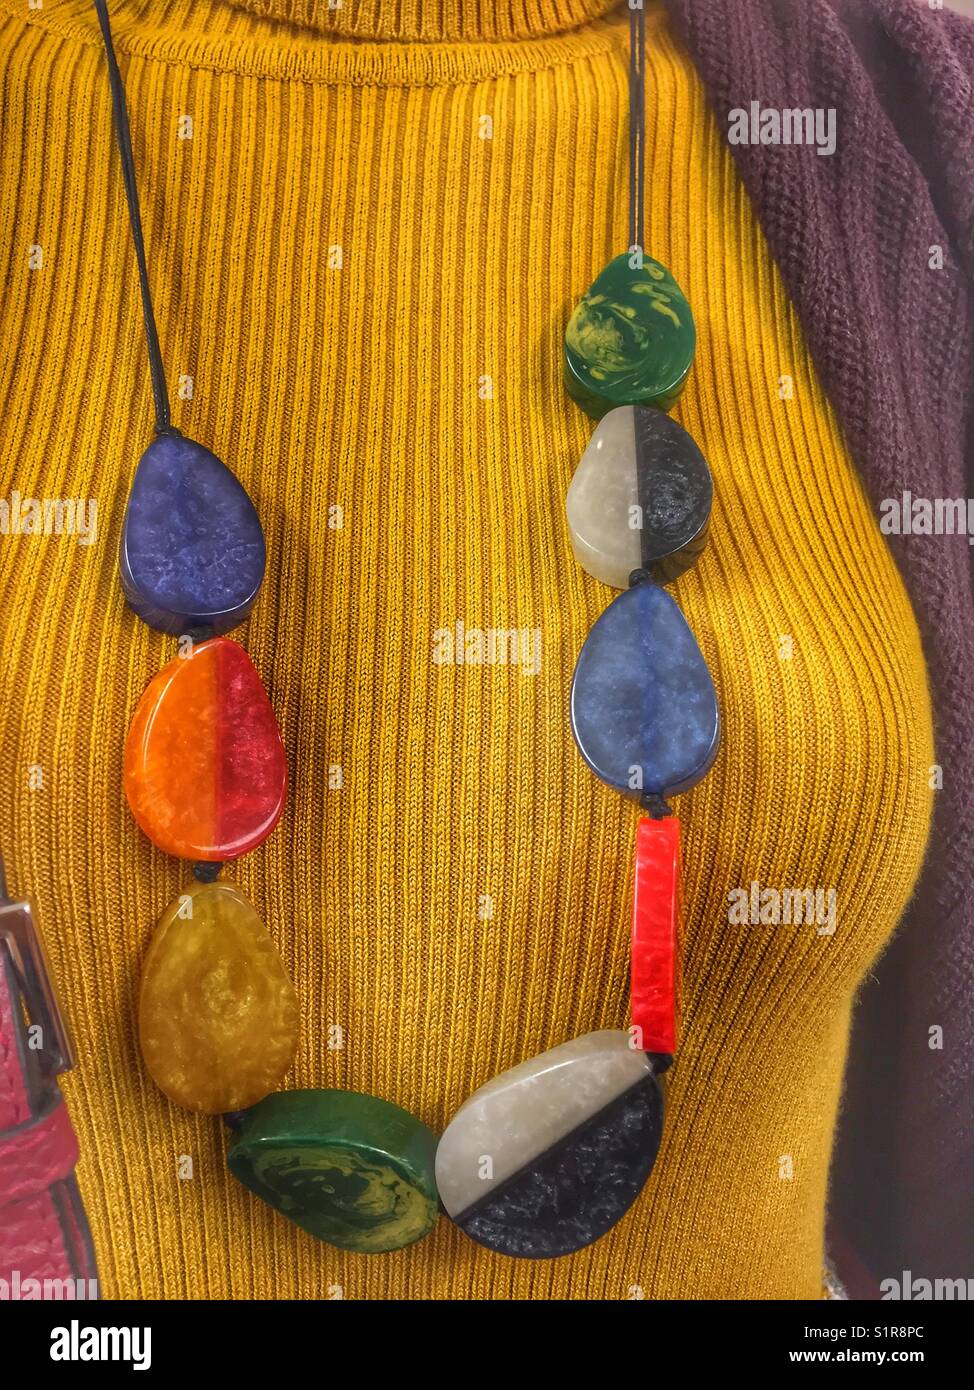 Un collier coloré est vu sur un mannequin dans un magasin Marks and Spencer en Angleterre Banque D'Images